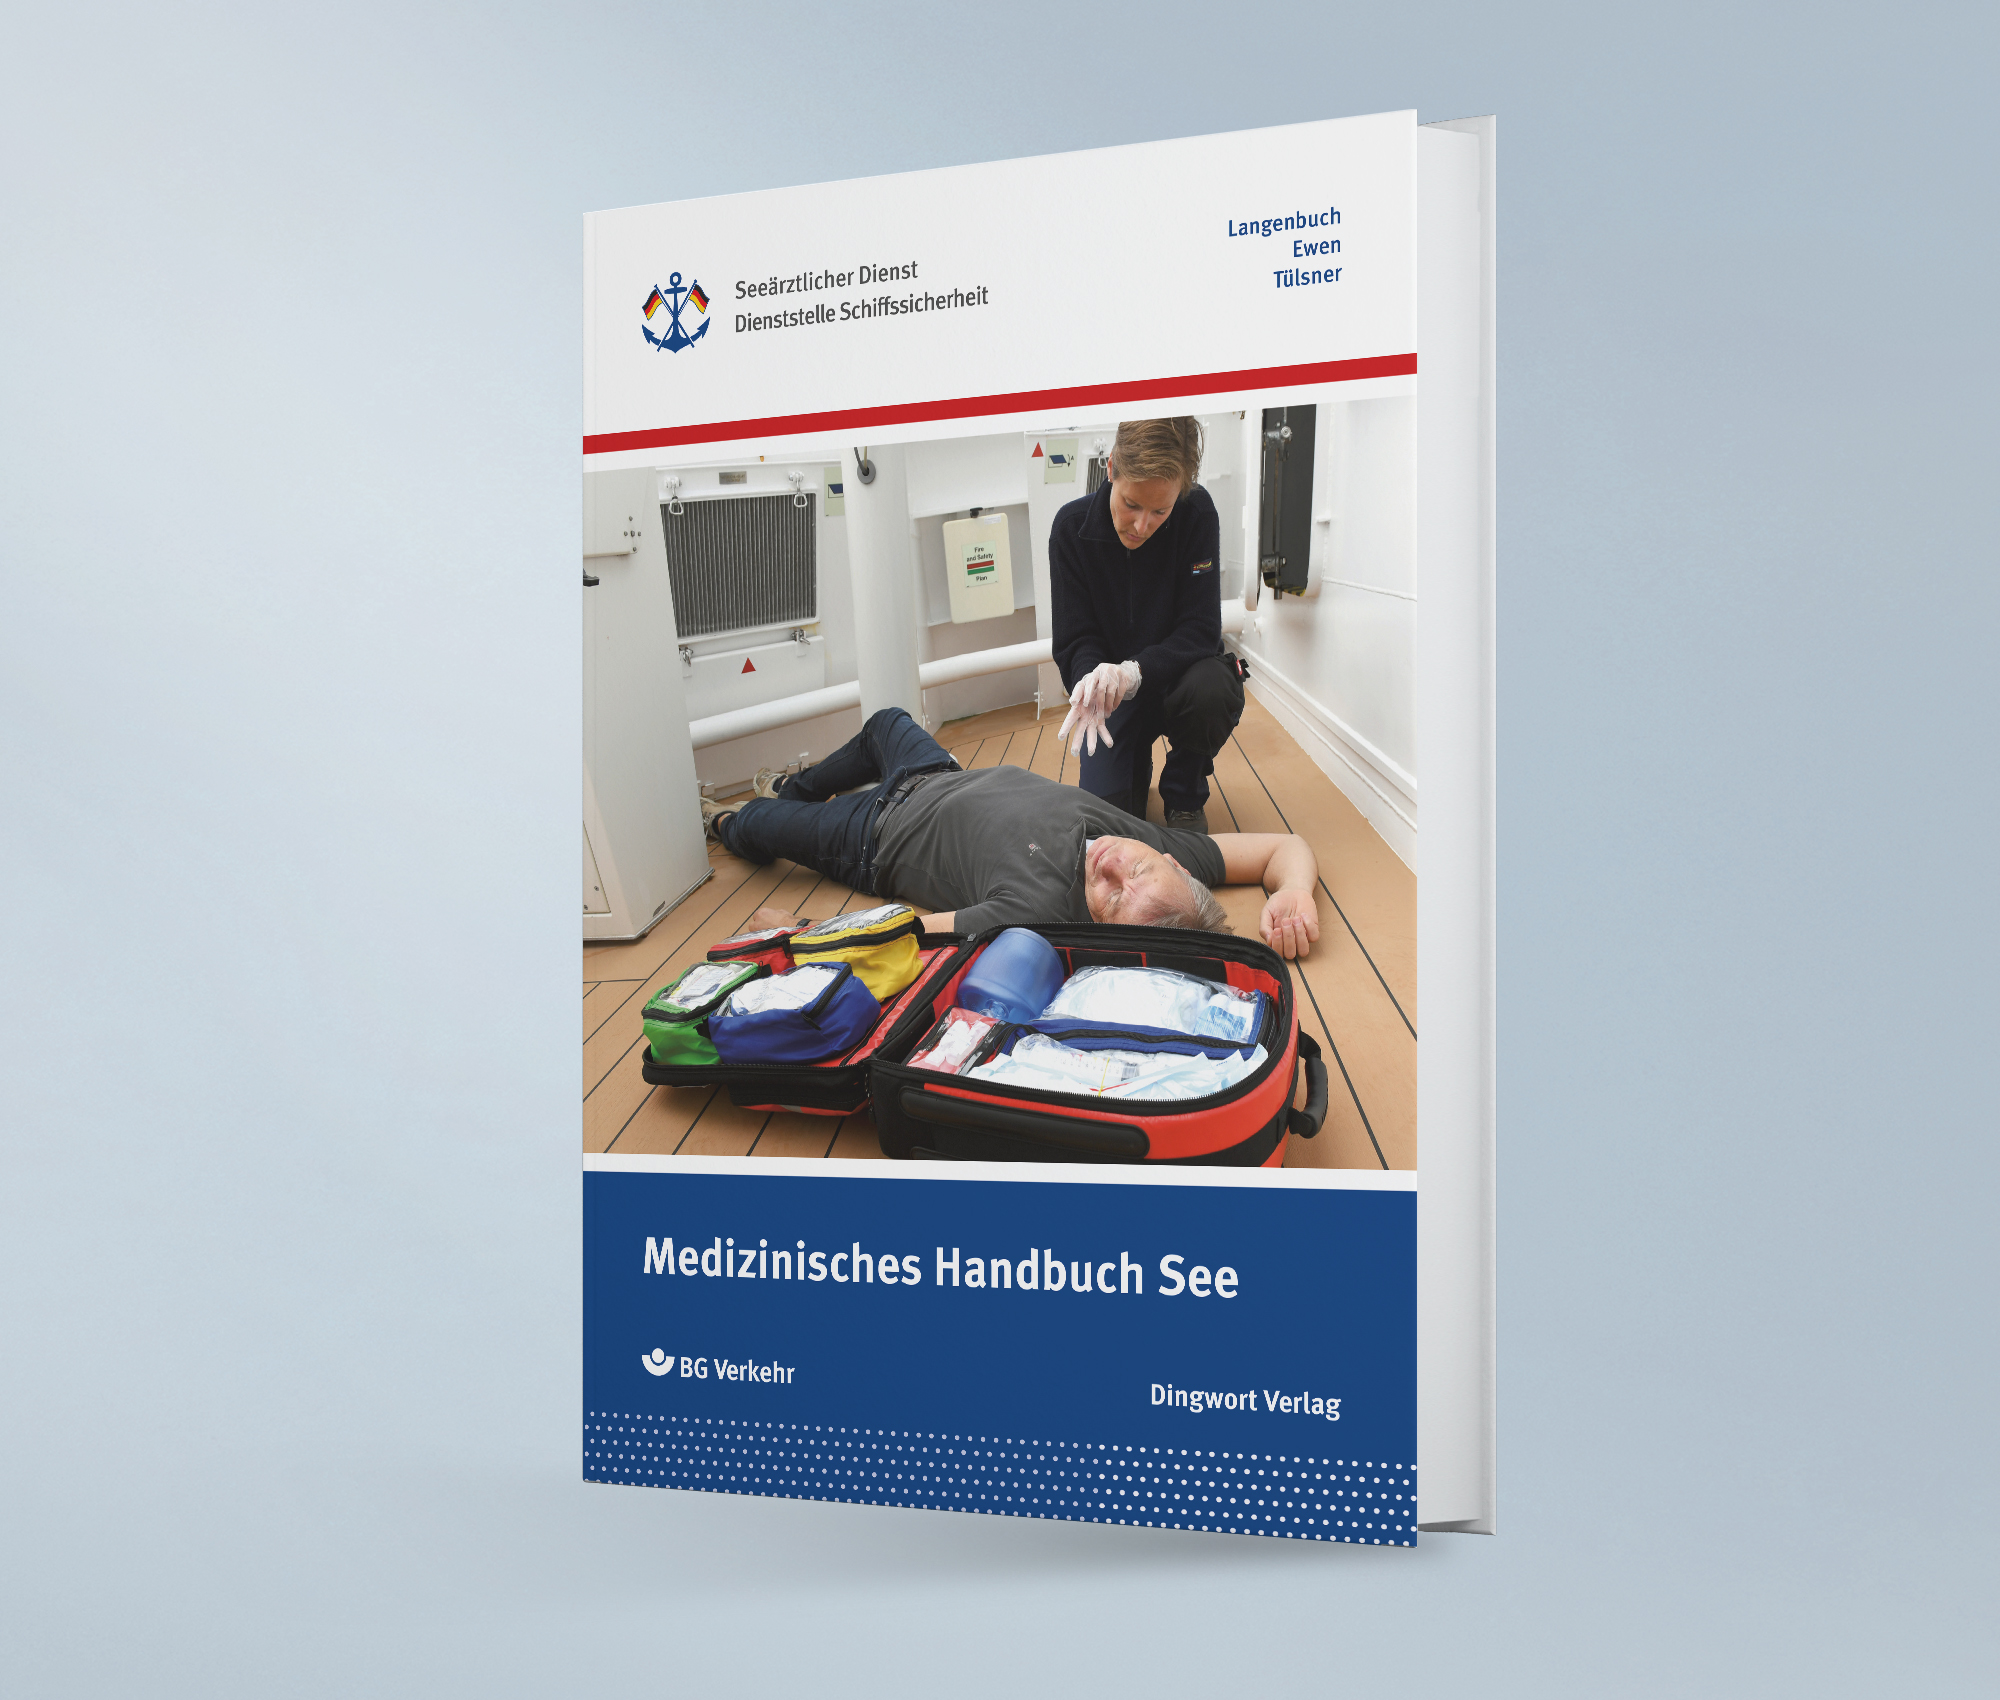 Medizinisches Handbuch See